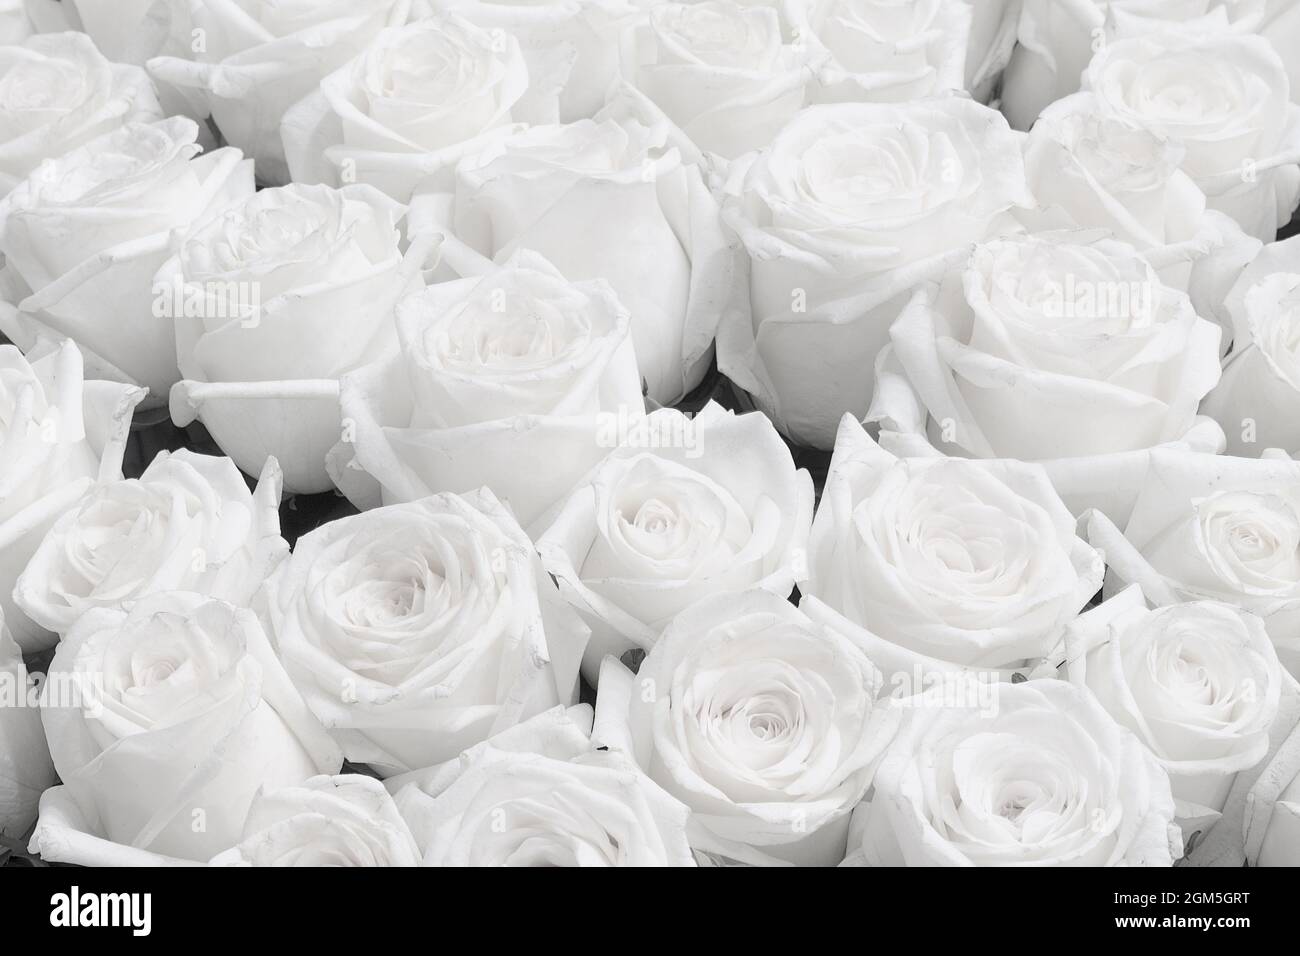 Weiße Rose Hintergrund, Hochzeitseinladung Weiße Rosen Stockfotografie -  Alamy